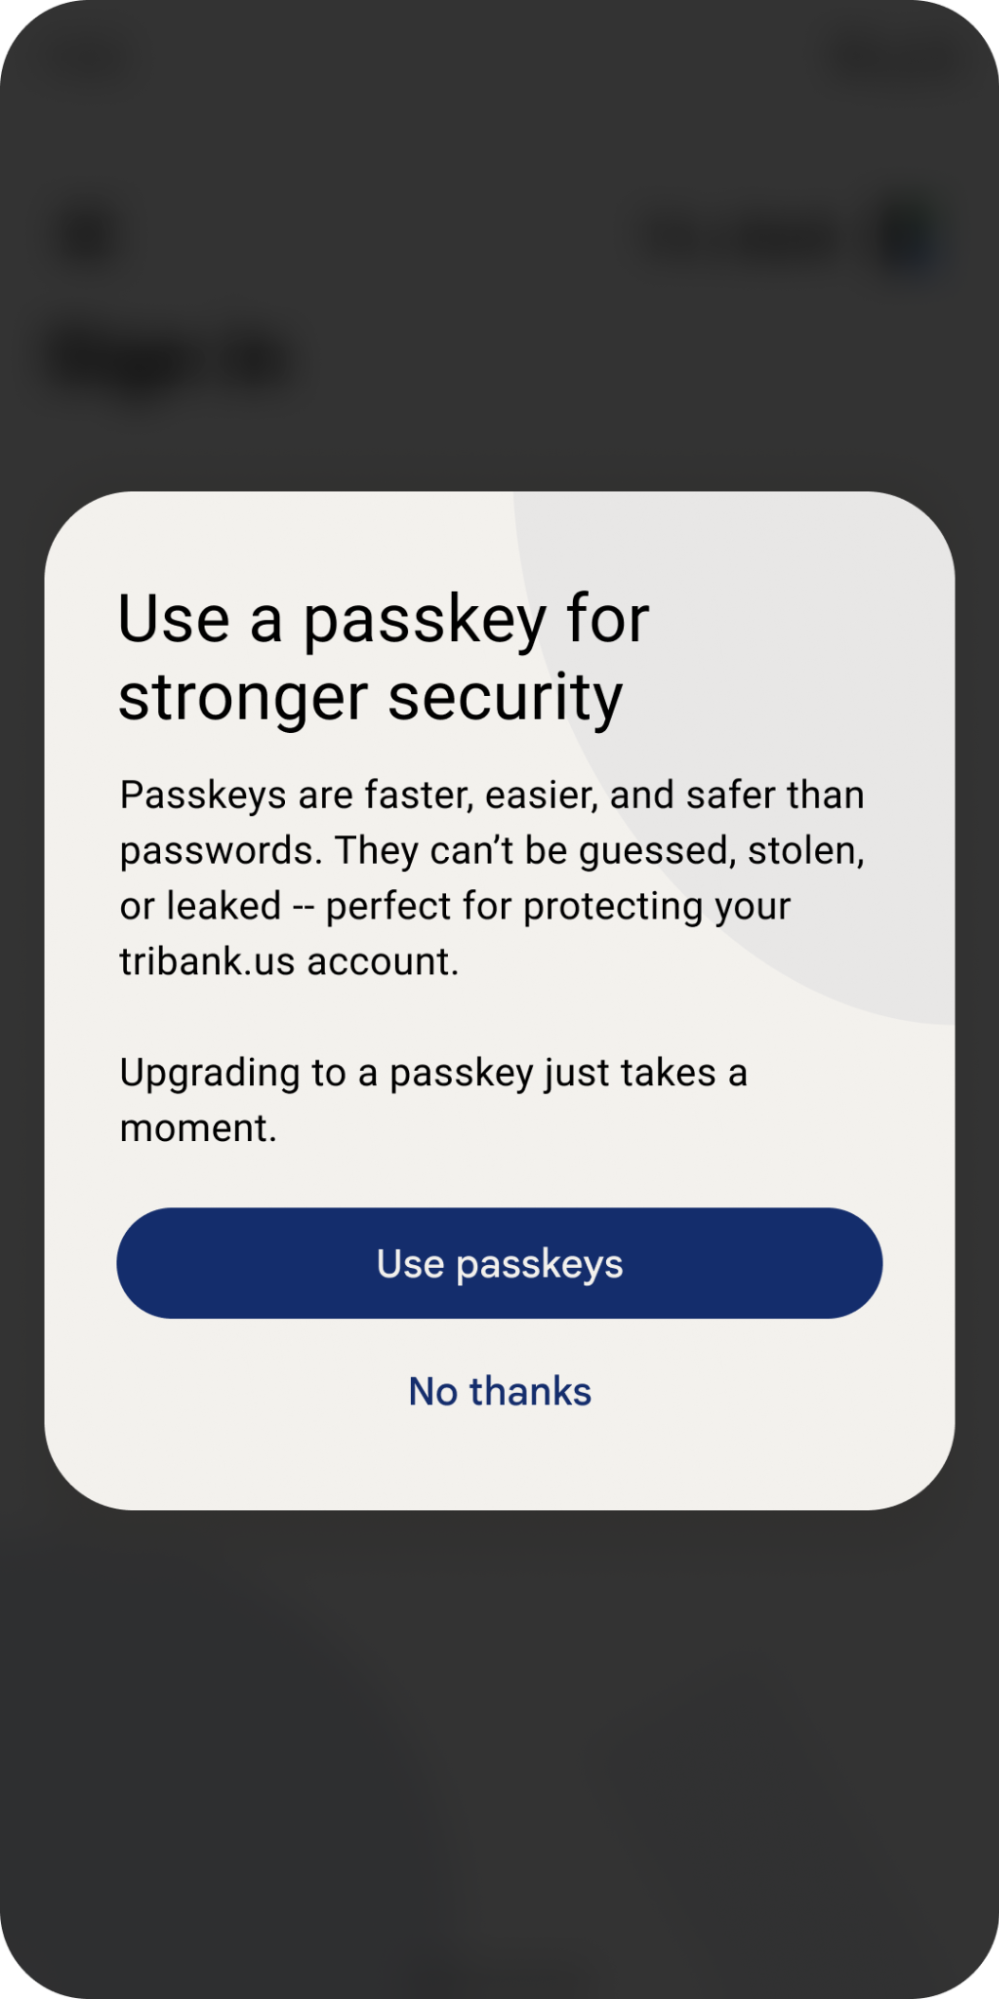 사용자에게 패스키를 사용하여 더 빠르고 안전한 비밀번호를 사용하라는 팝업 표시